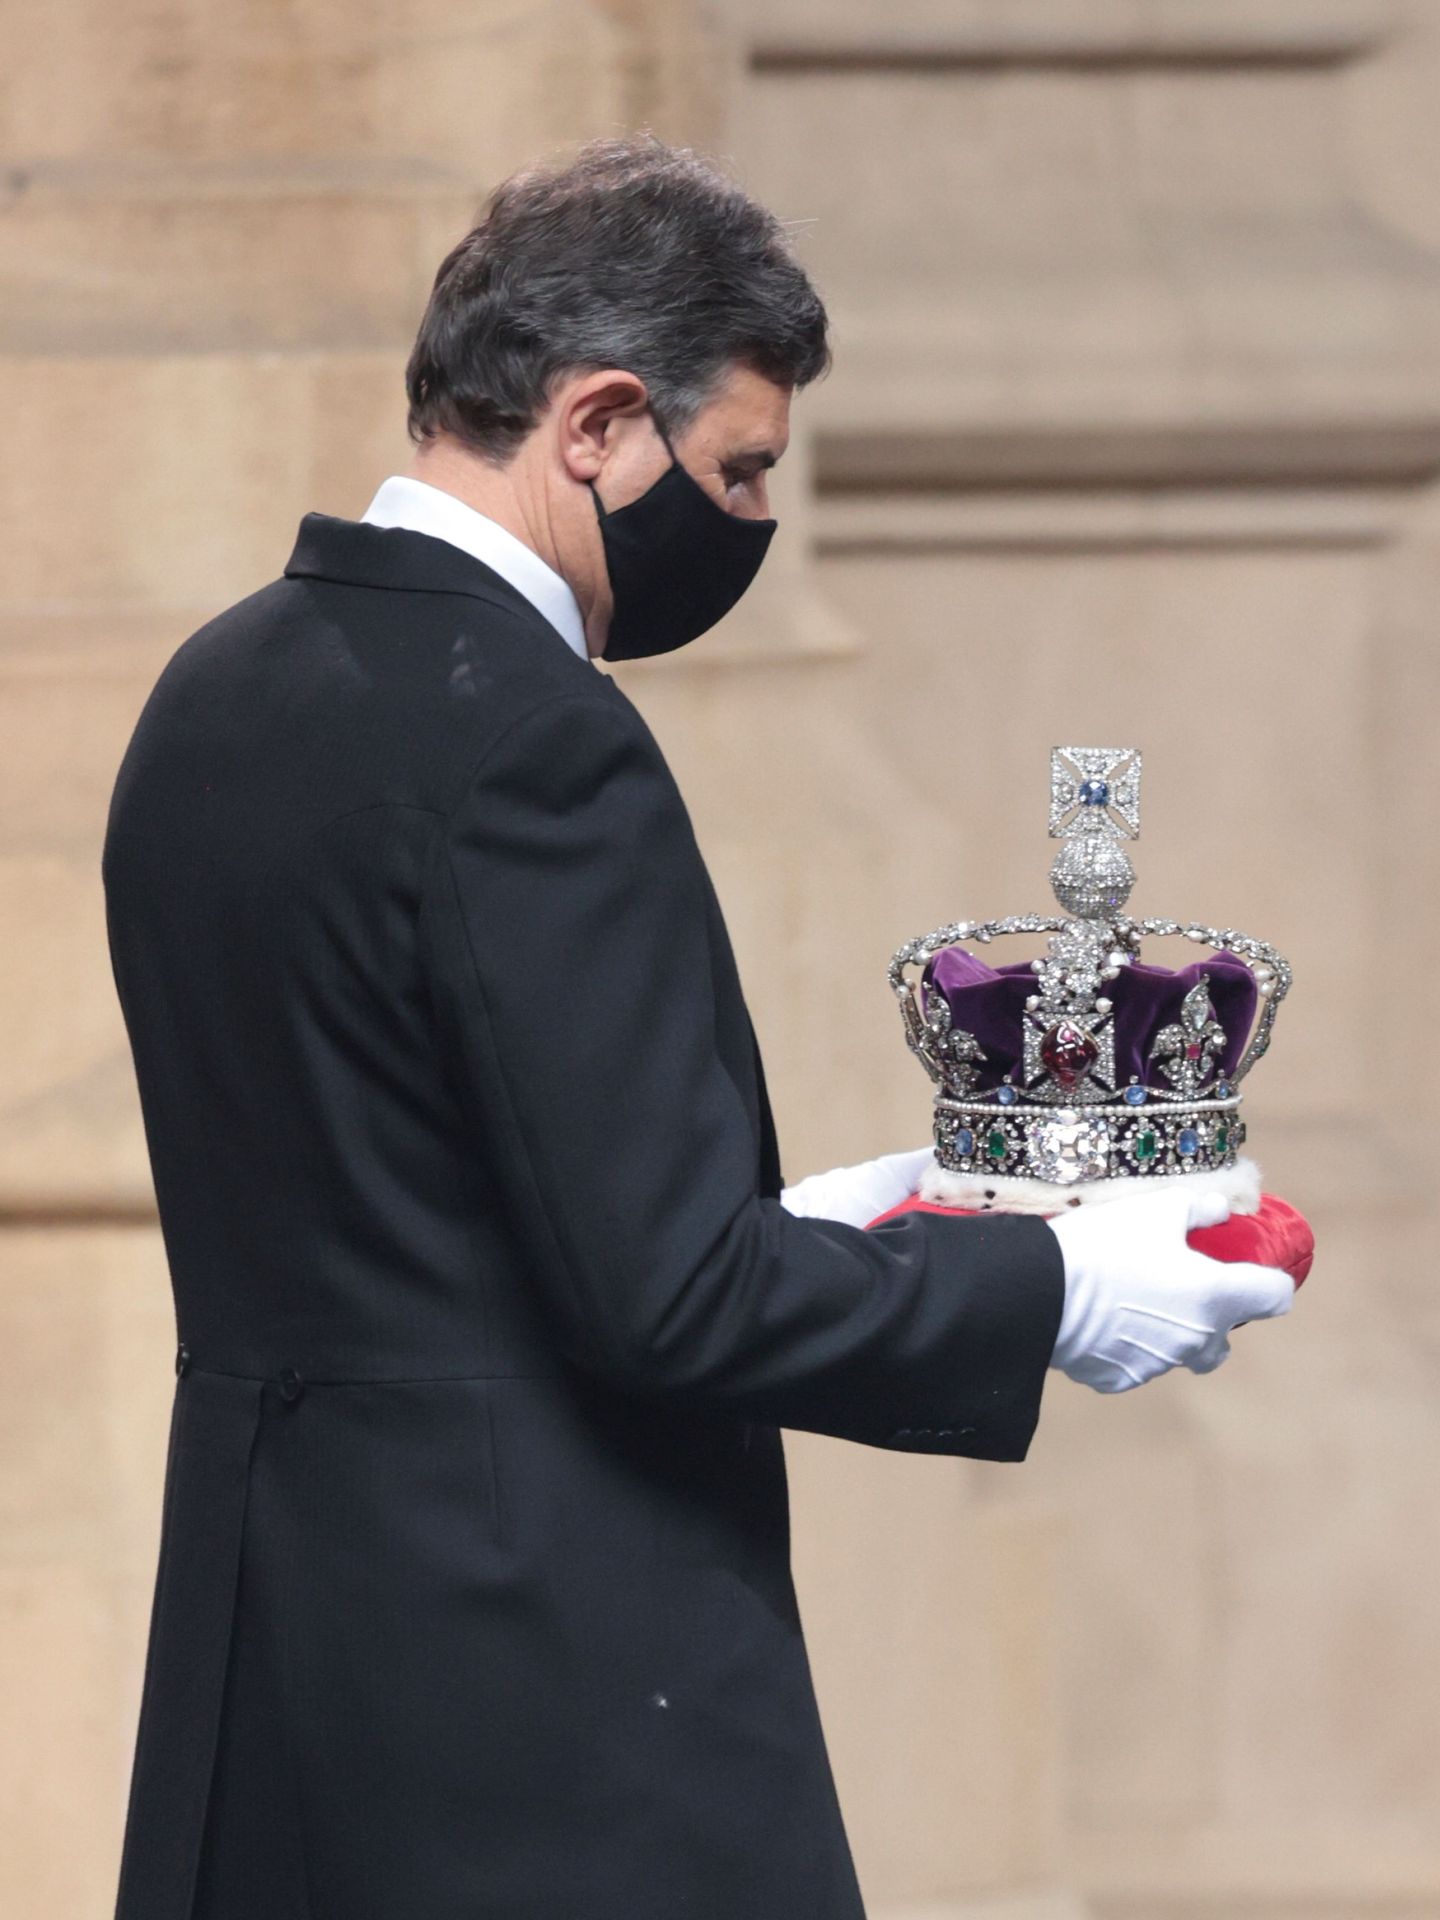 La corona, trasladada a su lugar tras la ceremonia de apertura del Parlamento. (Reuters)